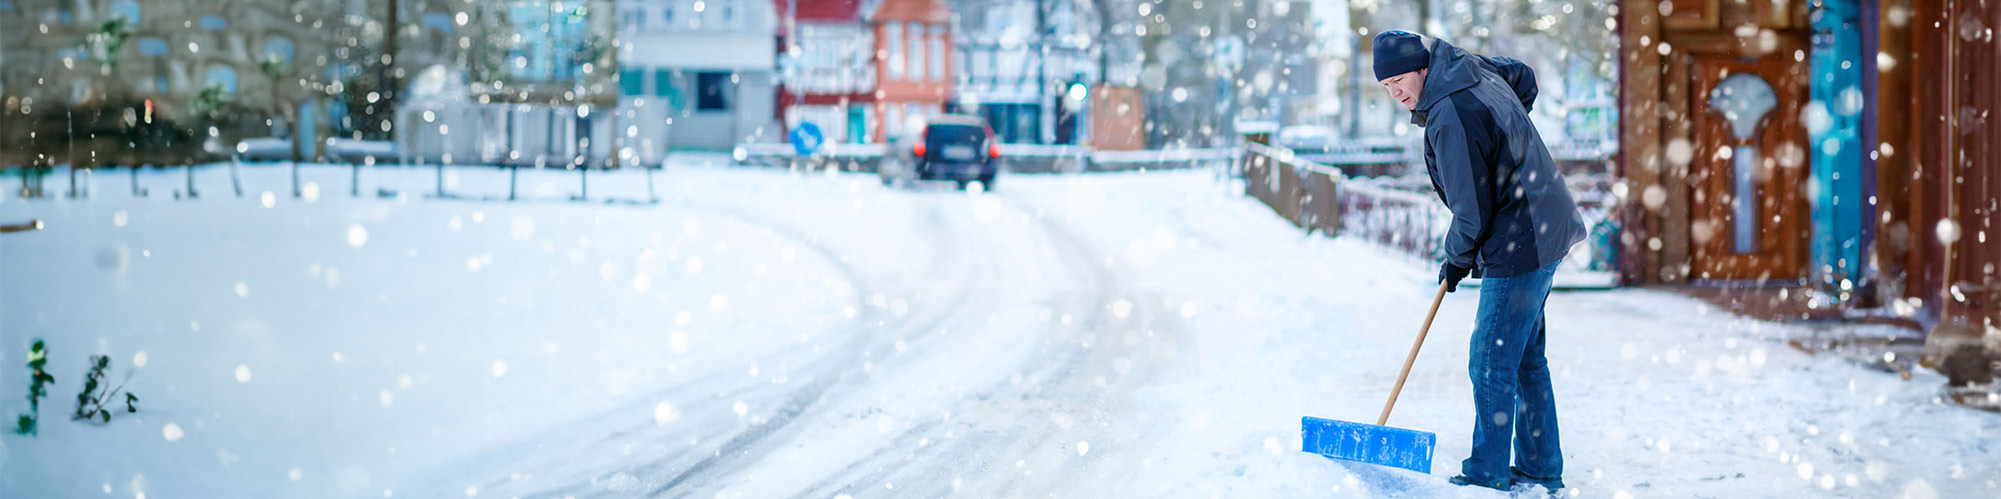 Un homme pelletant la neige dans une rue de la ville. Il porte des vêtements chauds, y compris un bonnet et des gants.